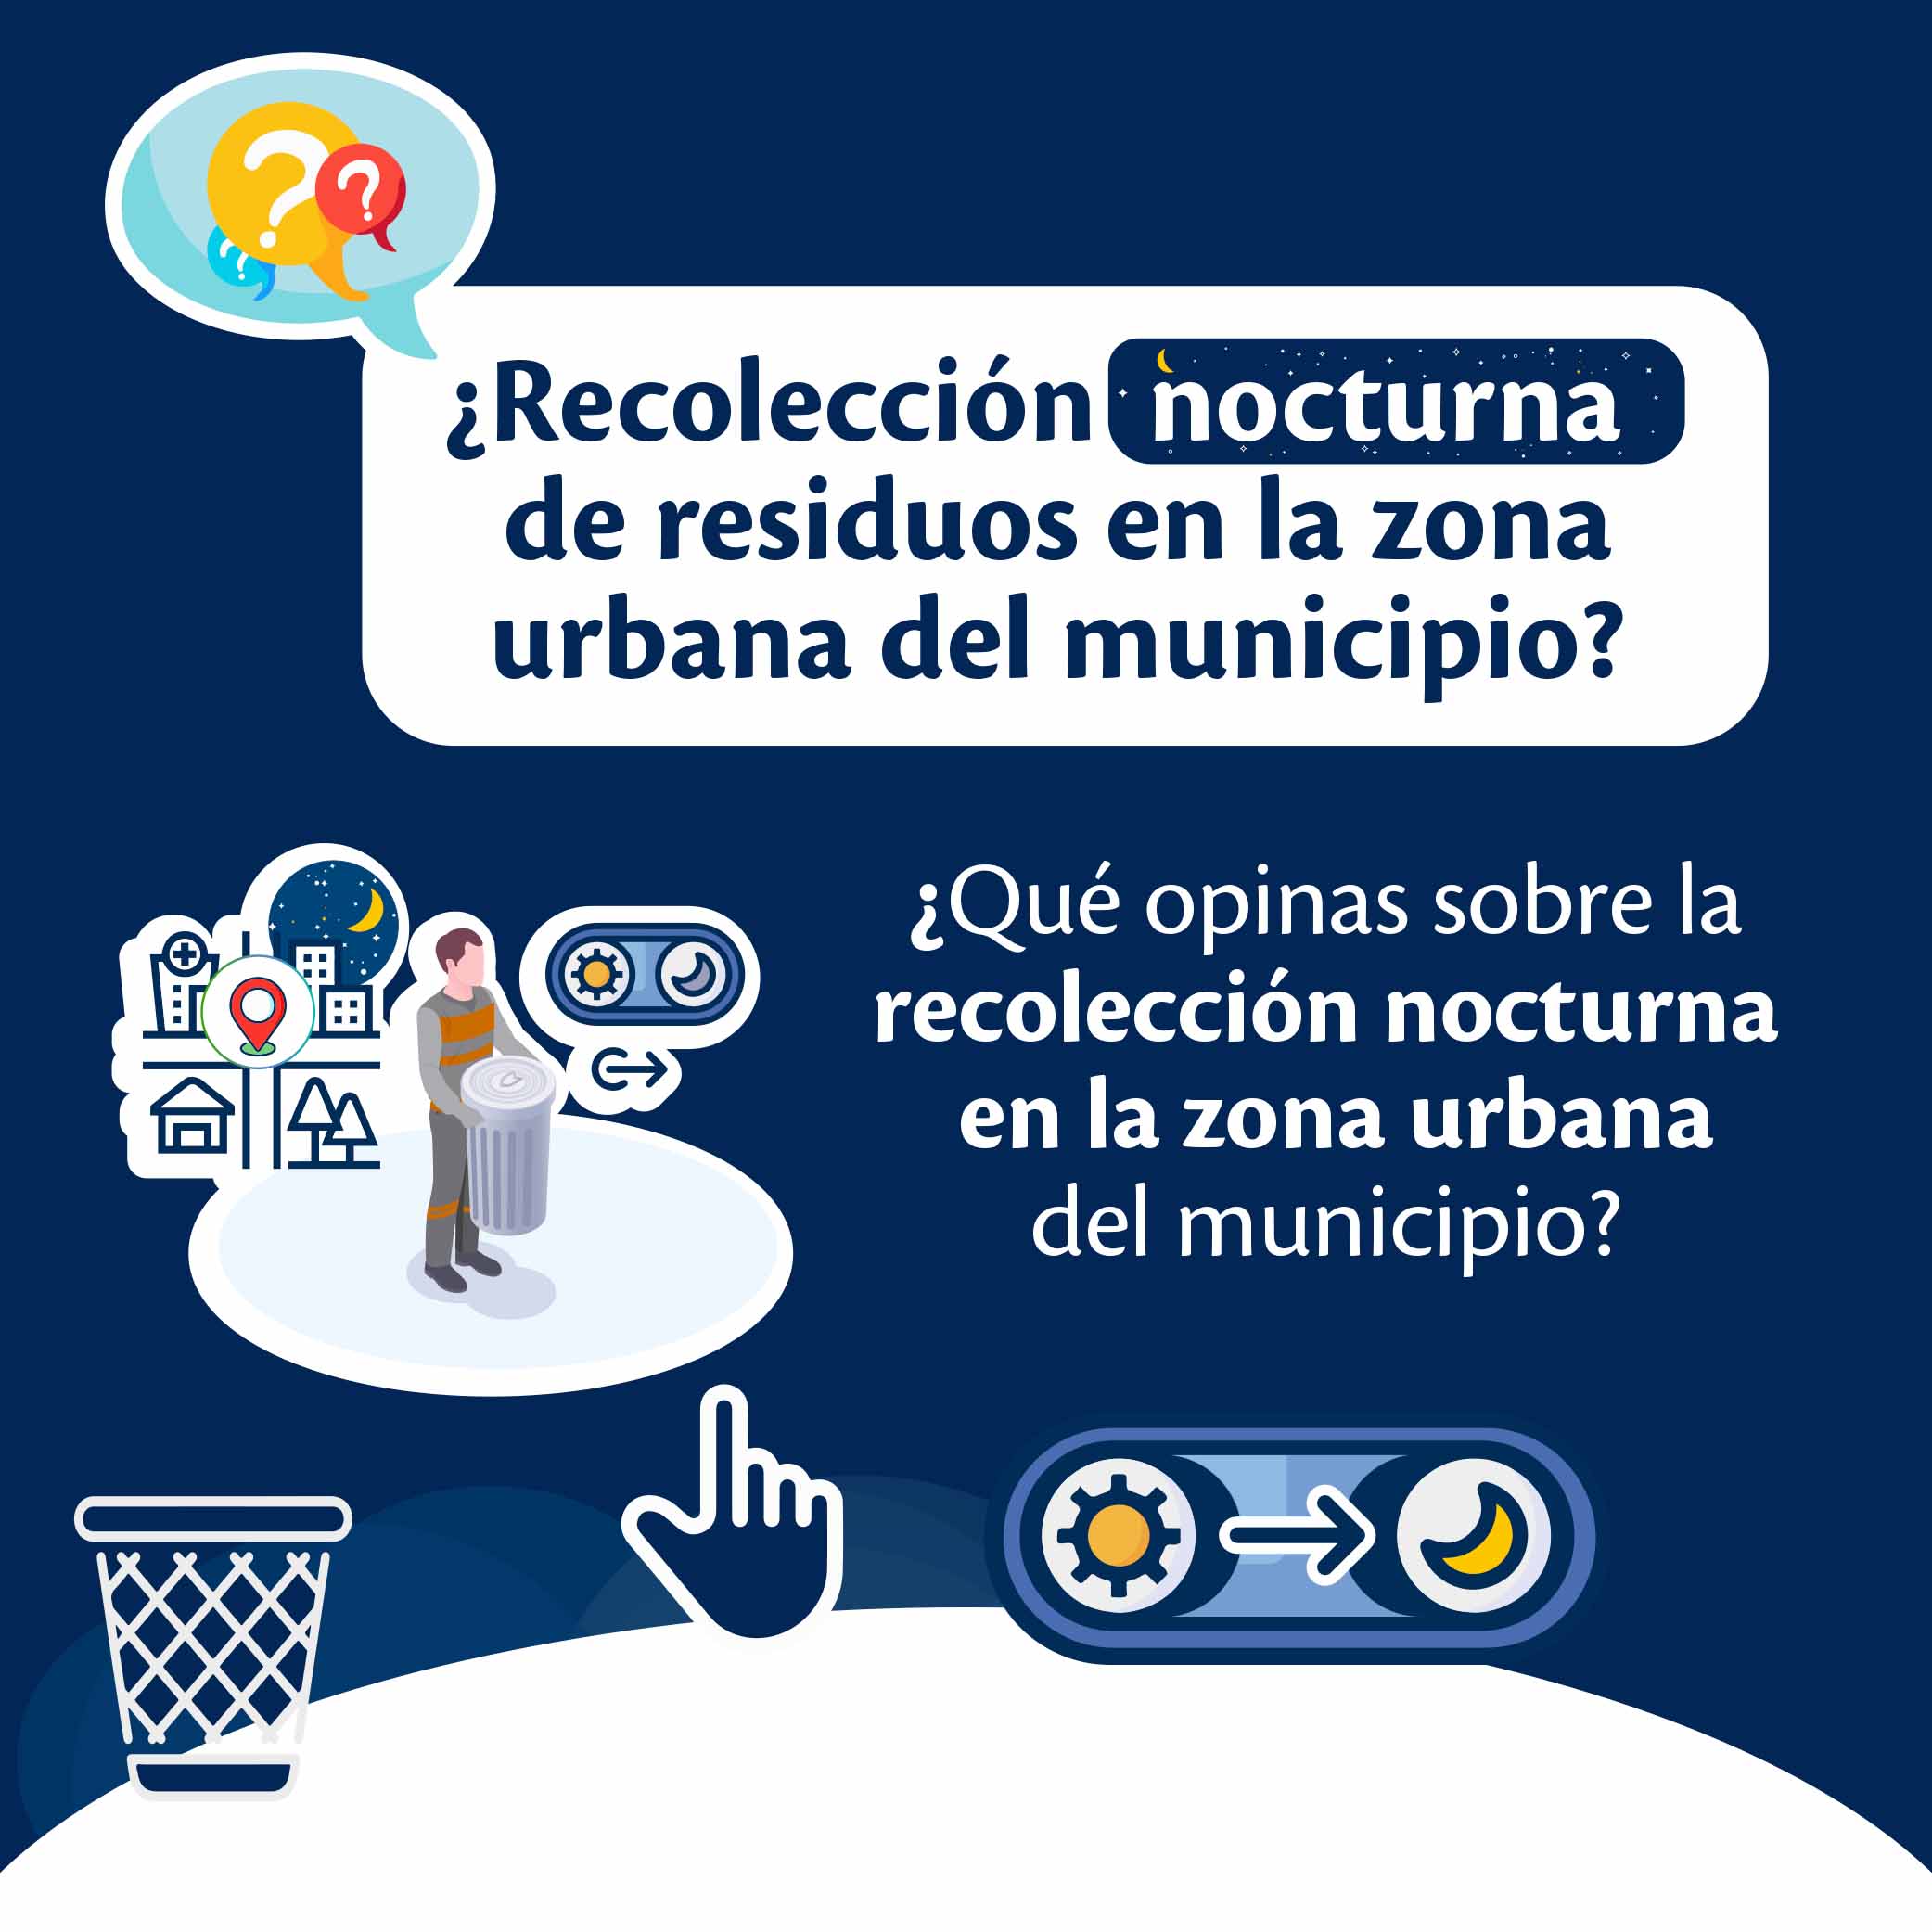 ¿Recolección nocturna de residuos en la zona urbana del municipio?